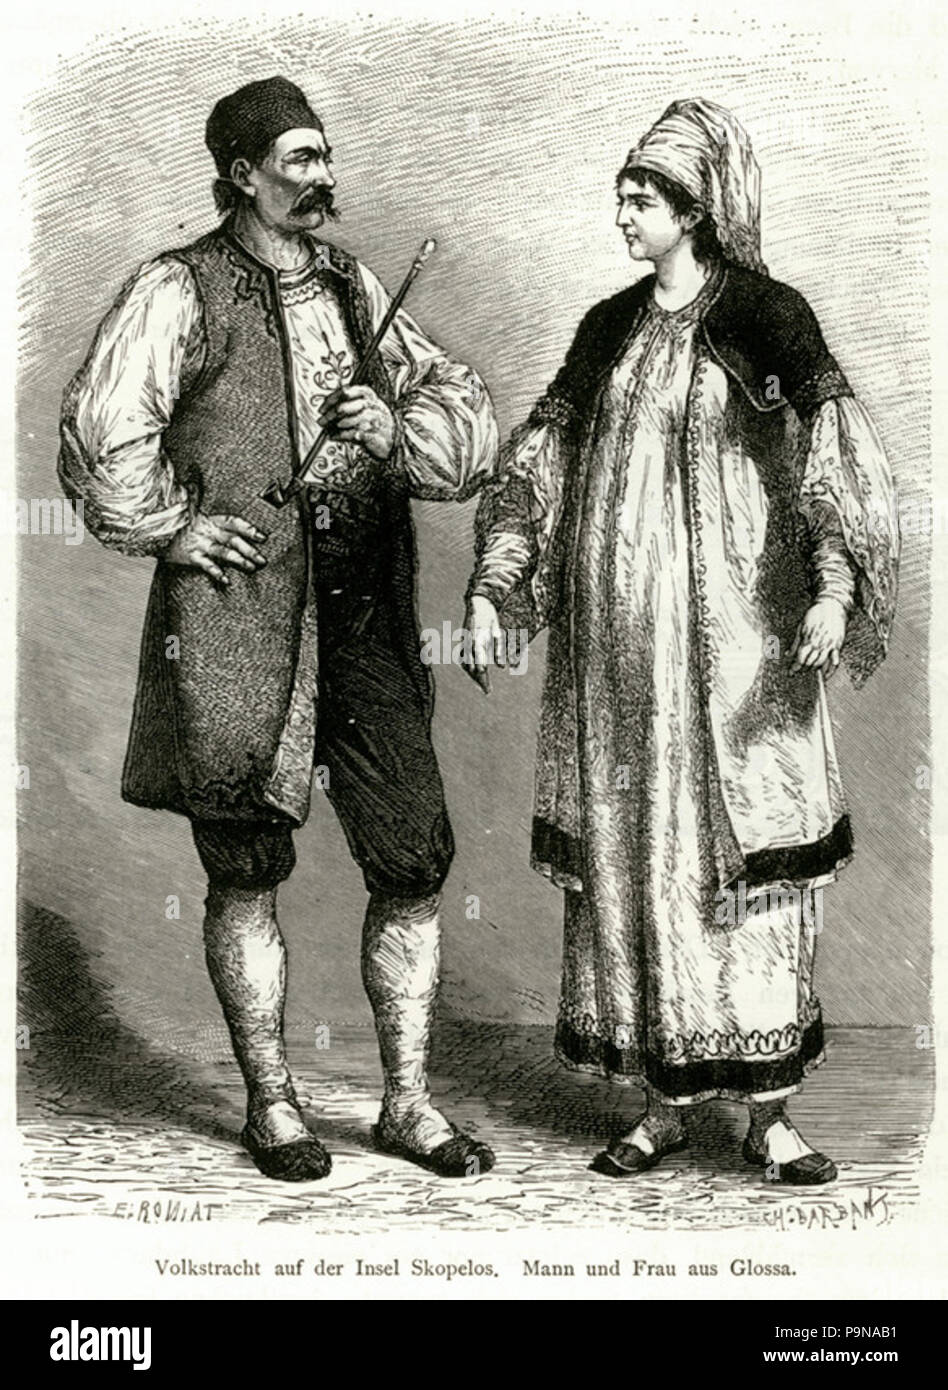 326 Volkstracht auf der Insel Skopelos Mann und Frau aus Glossa - Schweiger Lerchenfeld Amand (freiherr Von) - 1887 Stock Photo